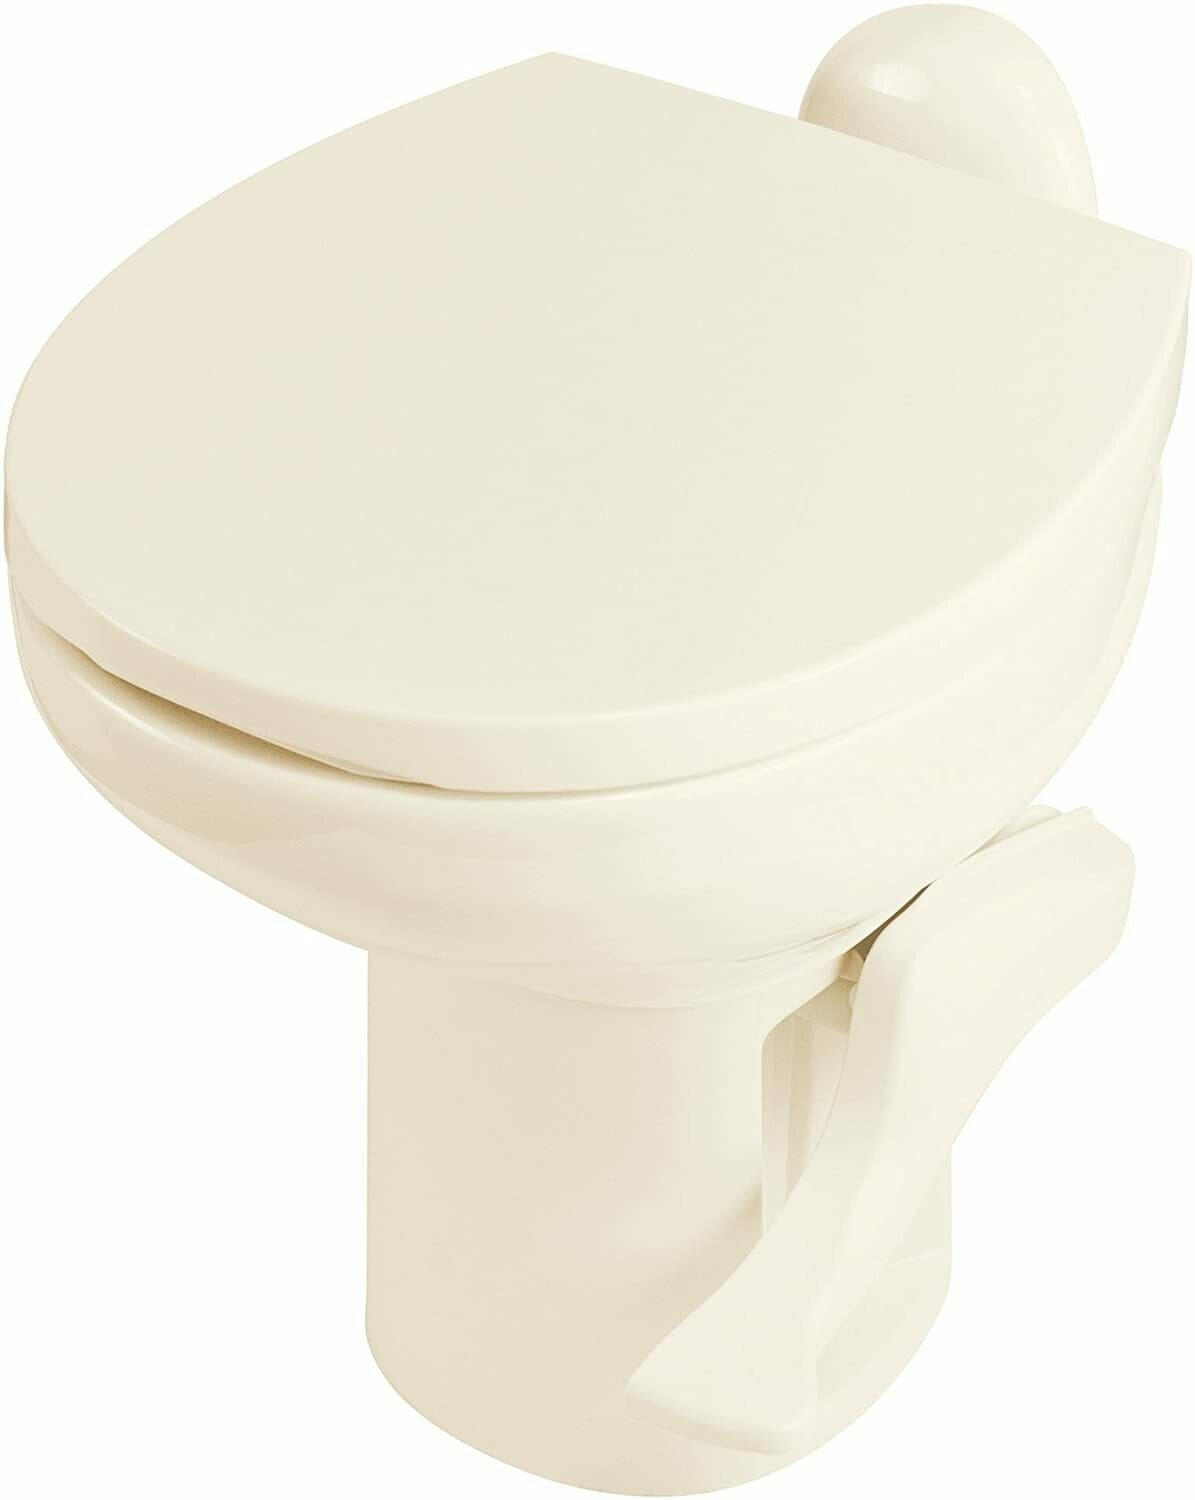 Thetford Style II High Toilet - Bone